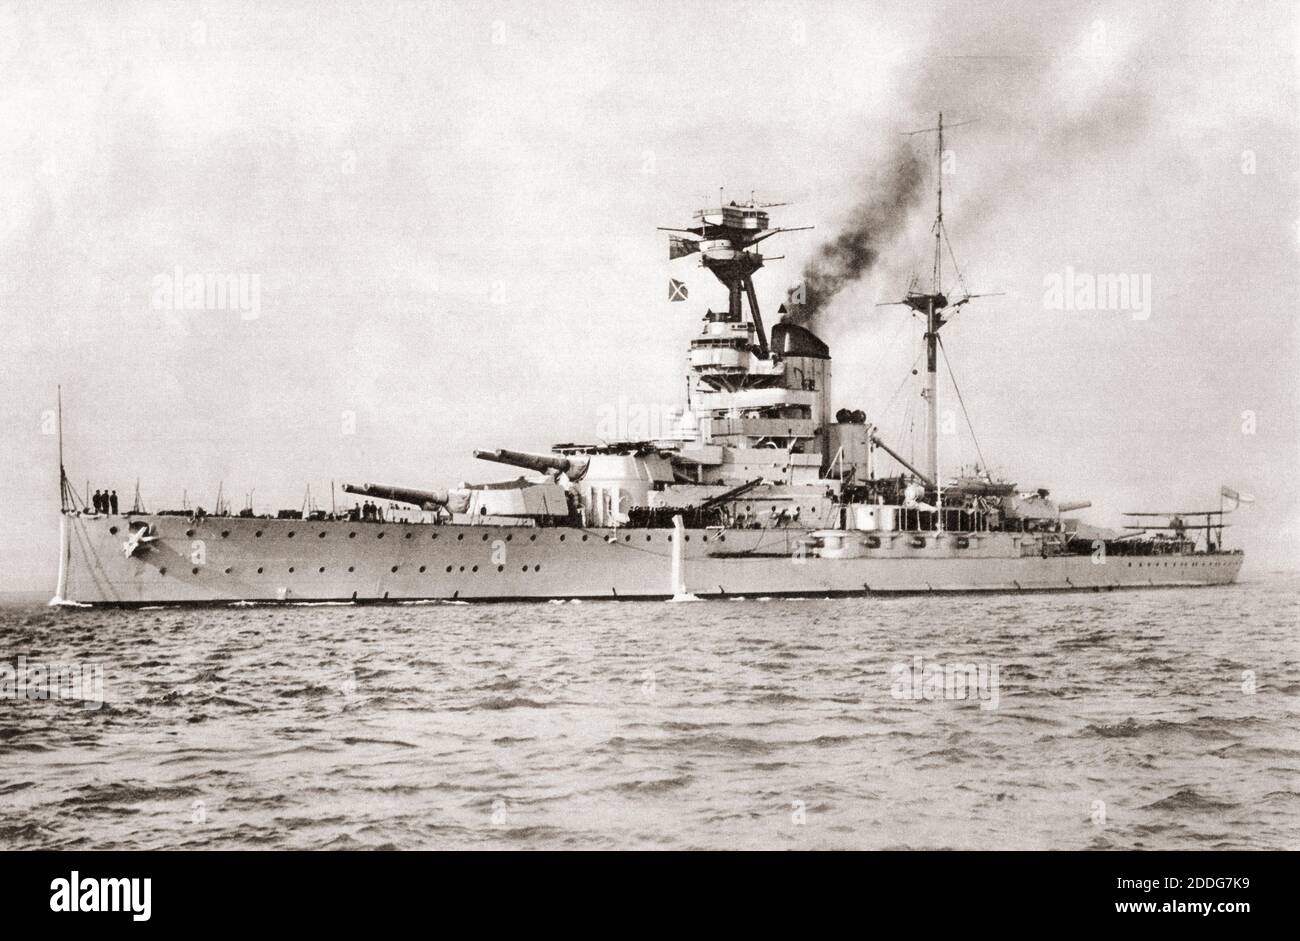 Risoluzione HMS della classe reale sovrana. Il rigonfiamento lungo la linea d'acqua minimizzasse una tendenza precedente a rotolare. Dalle navi da guerra britanniche, pubblicato nel 1940. Foto Stock